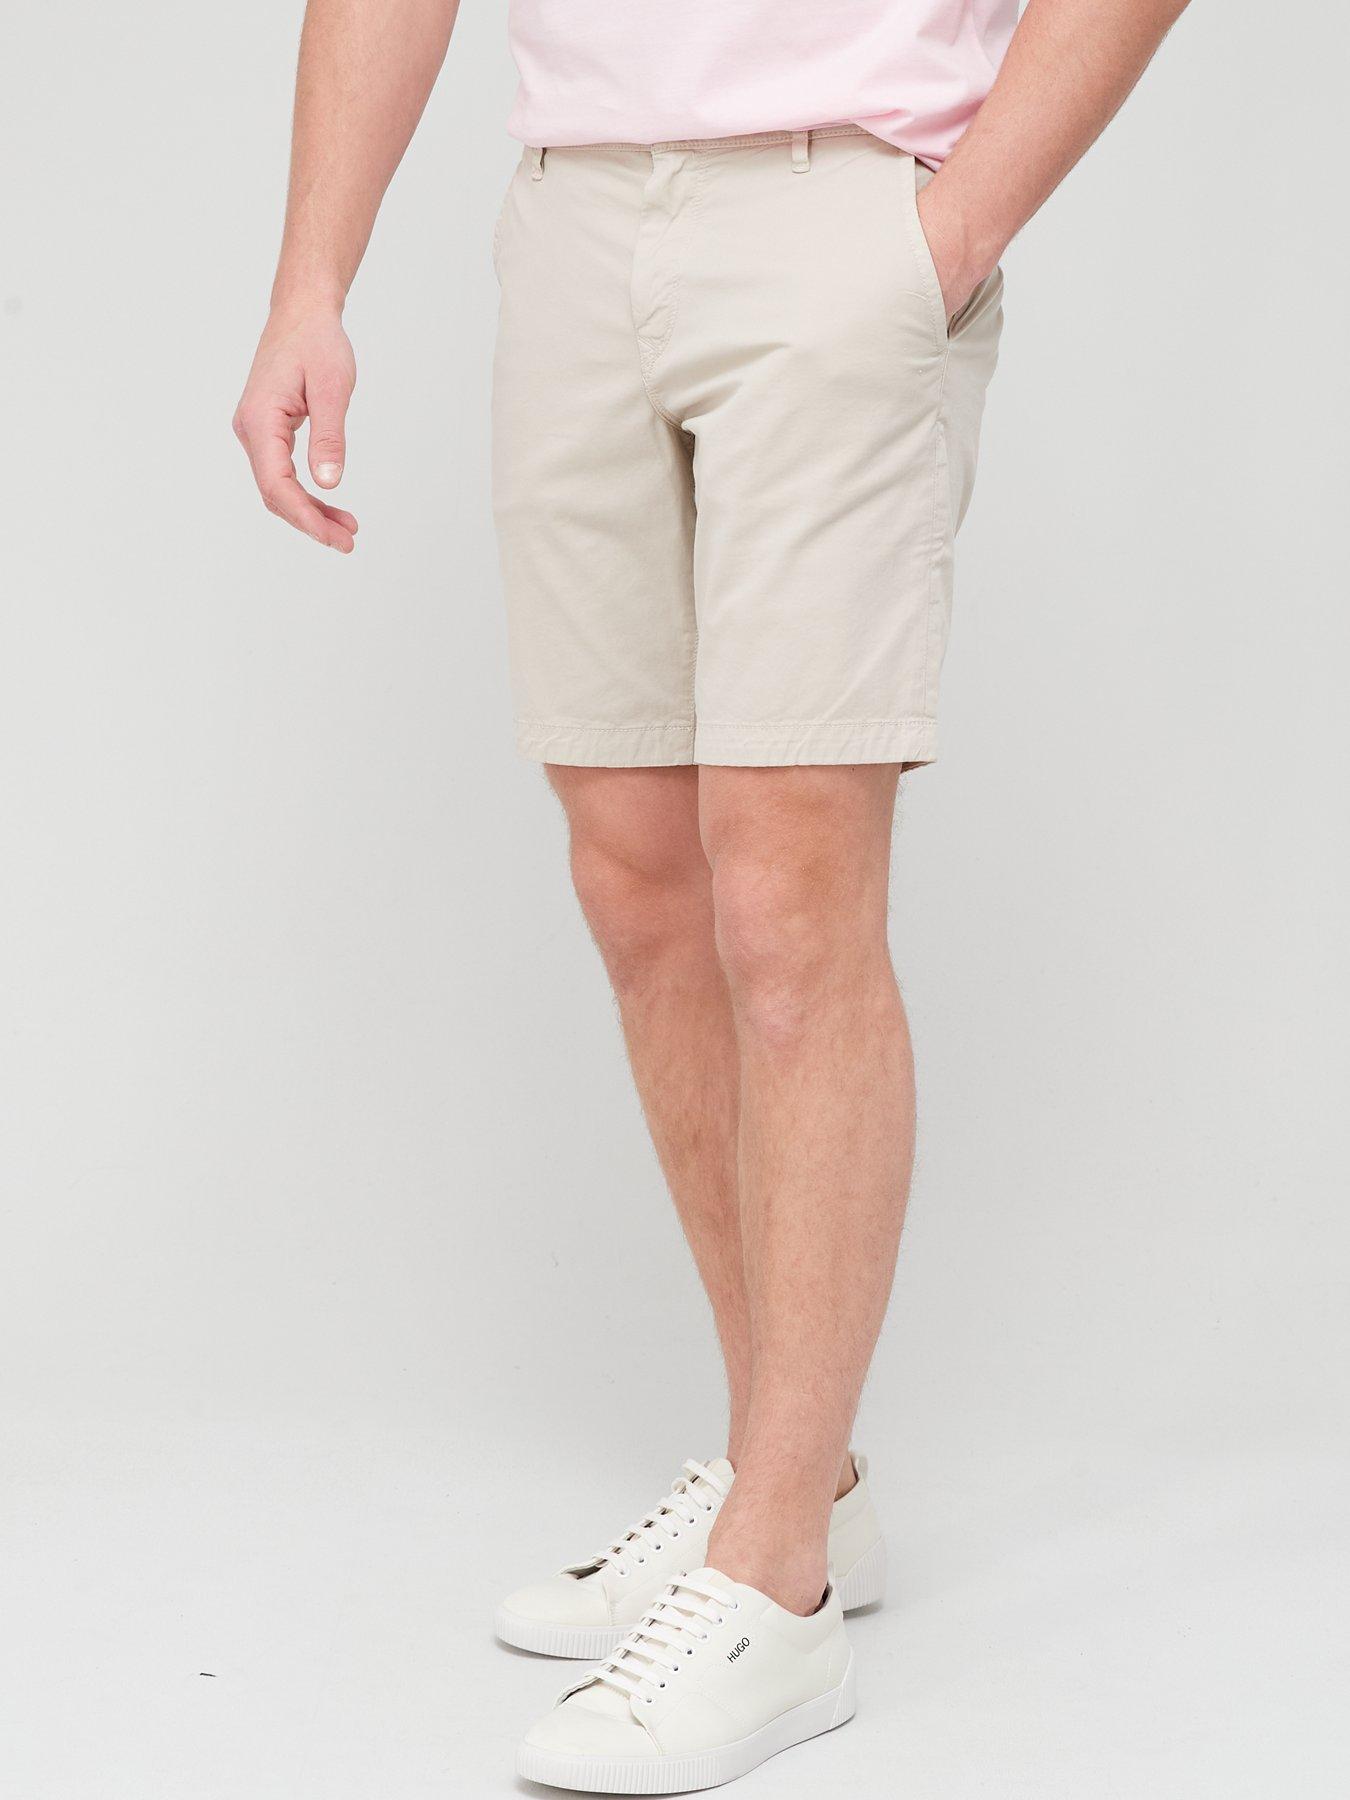  Schino Slim Chino Shorts - Light Beige